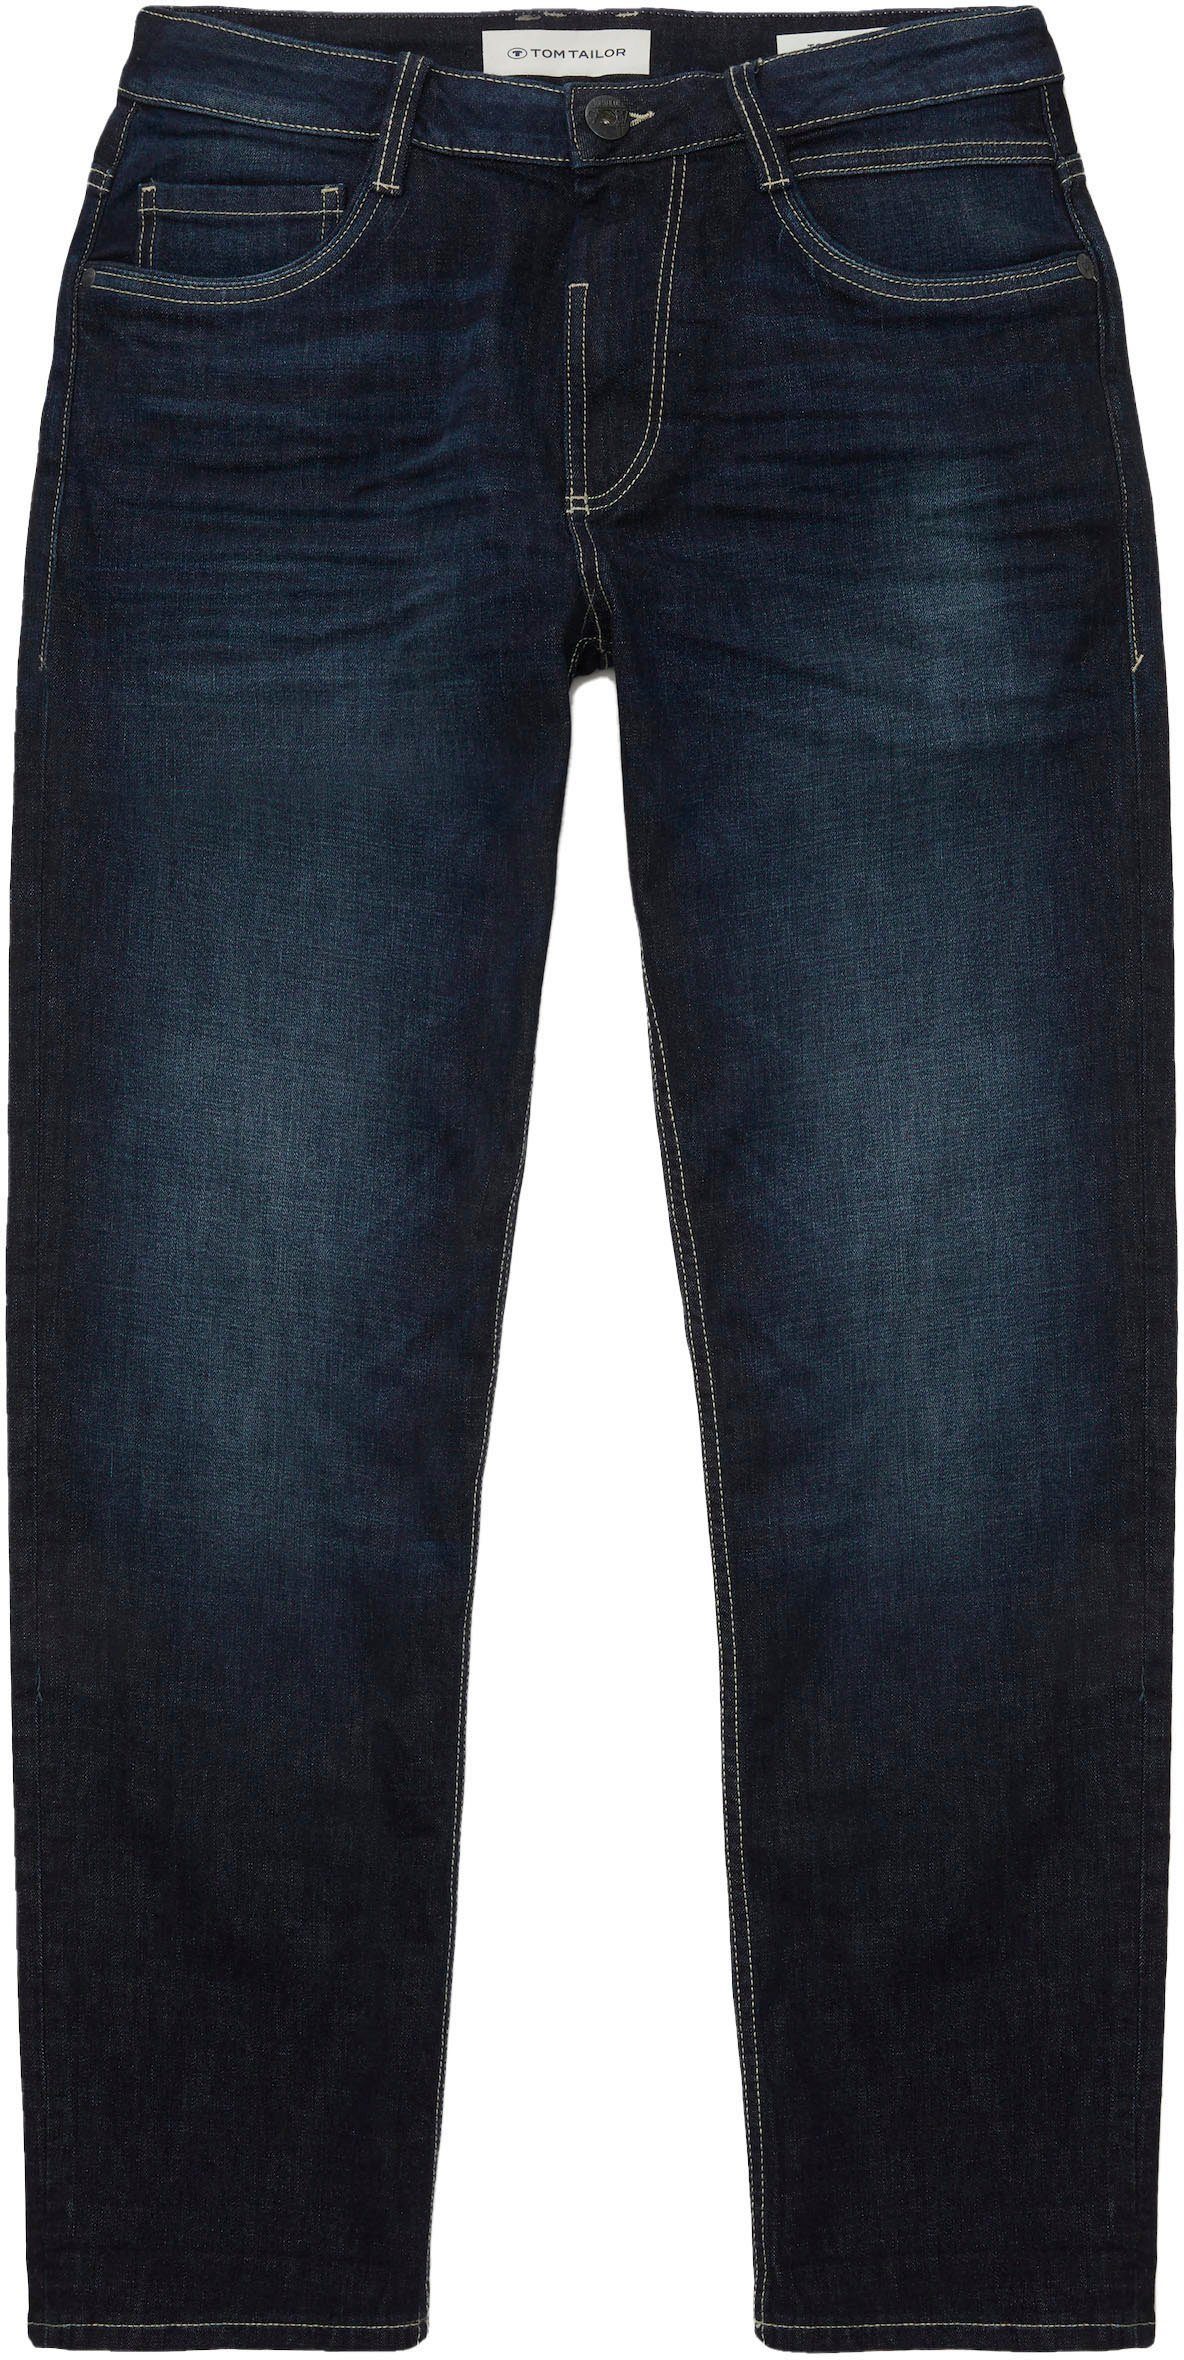 used-Look stone dark TOM TAILOR im used 5-Pocket-Jeans